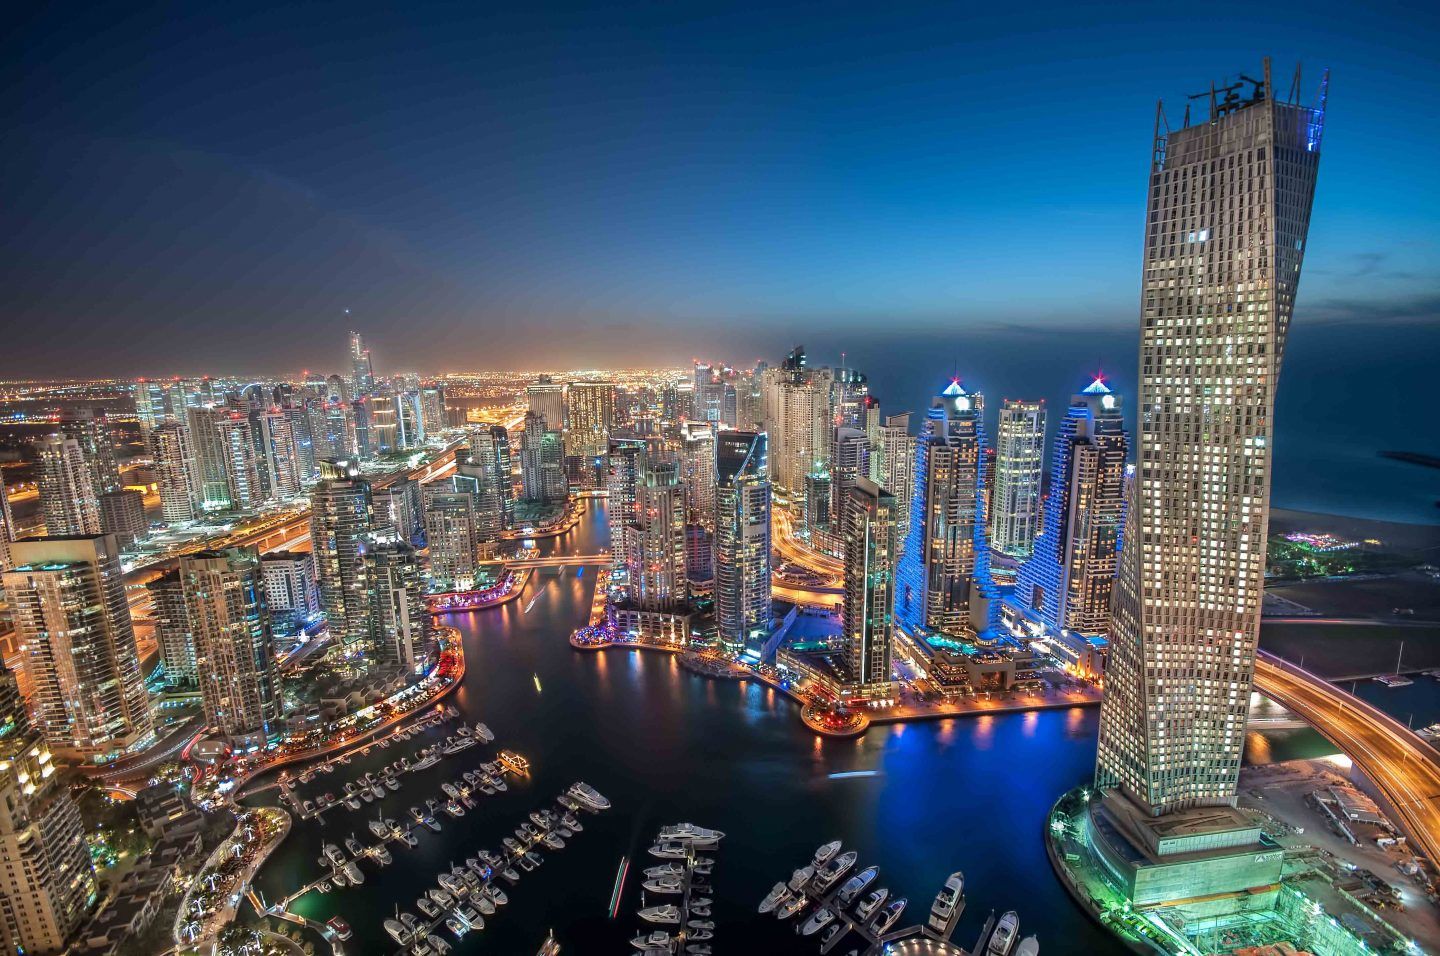 دبي: مدينة المستقبل خطوة نحو اقتصاد مستقبلي مبني على نظام بلوكتشين